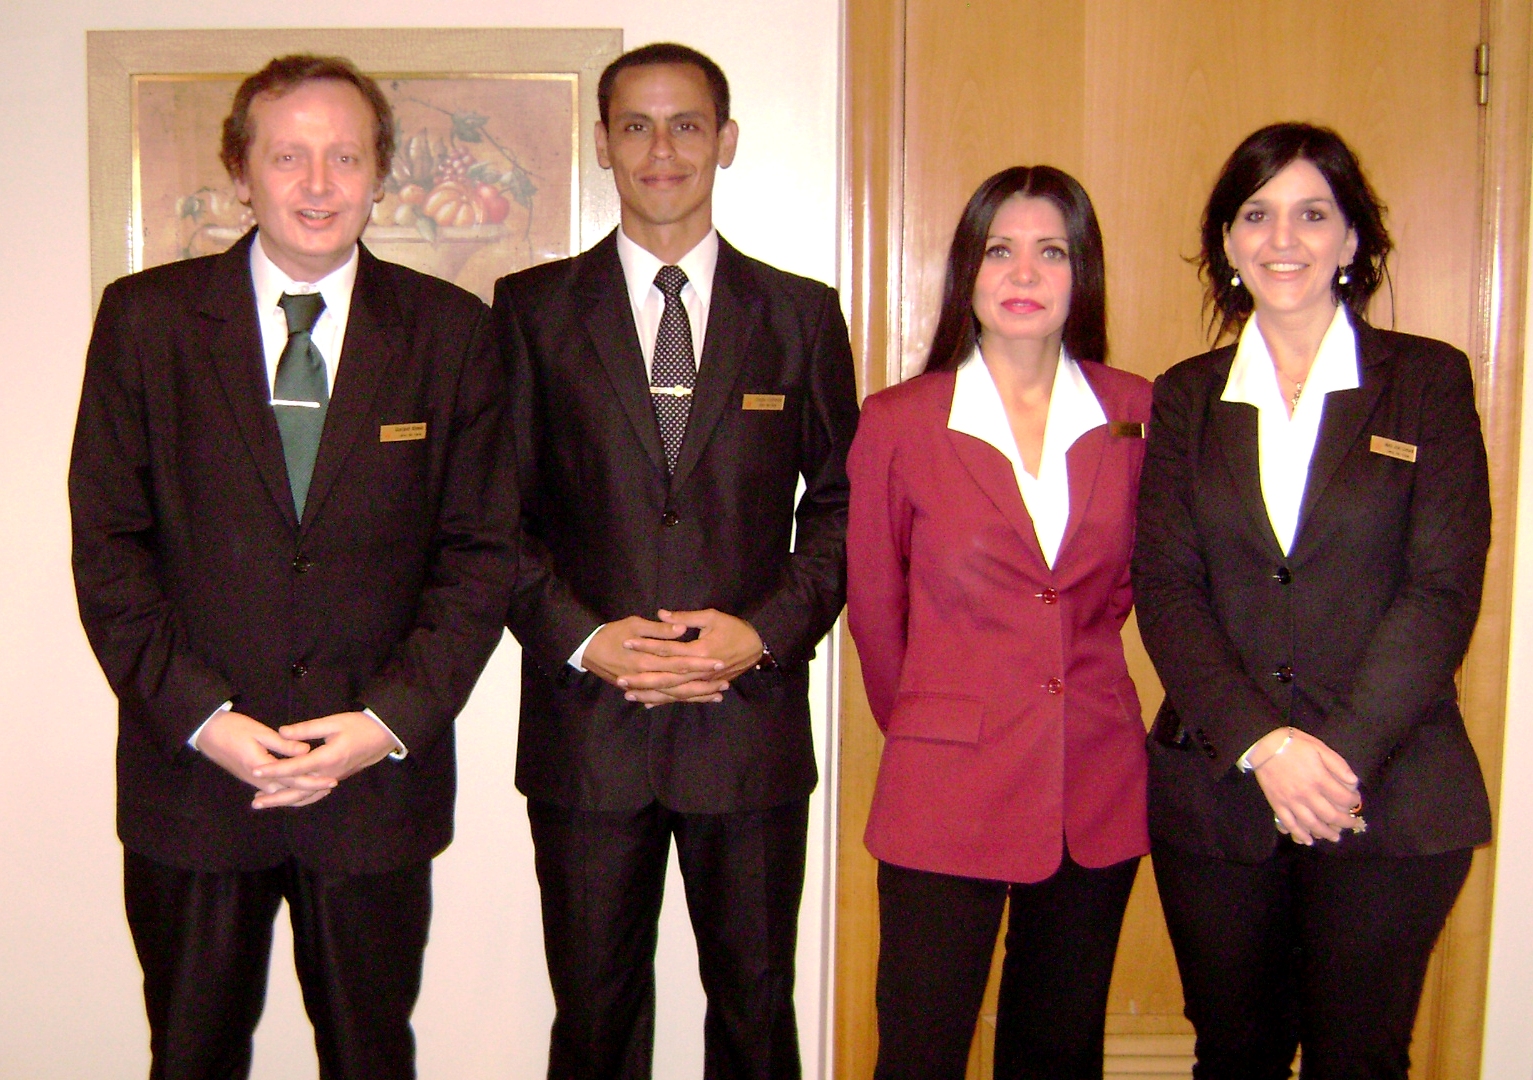 Foto: De izquierda a derecha, Gustavo Kiselis Jefe de Sala, Sergio Quiñones Jefe de Sala, Gladys Orellana Encargada de Gastronomía y María José Contardi Jefe de Sala.